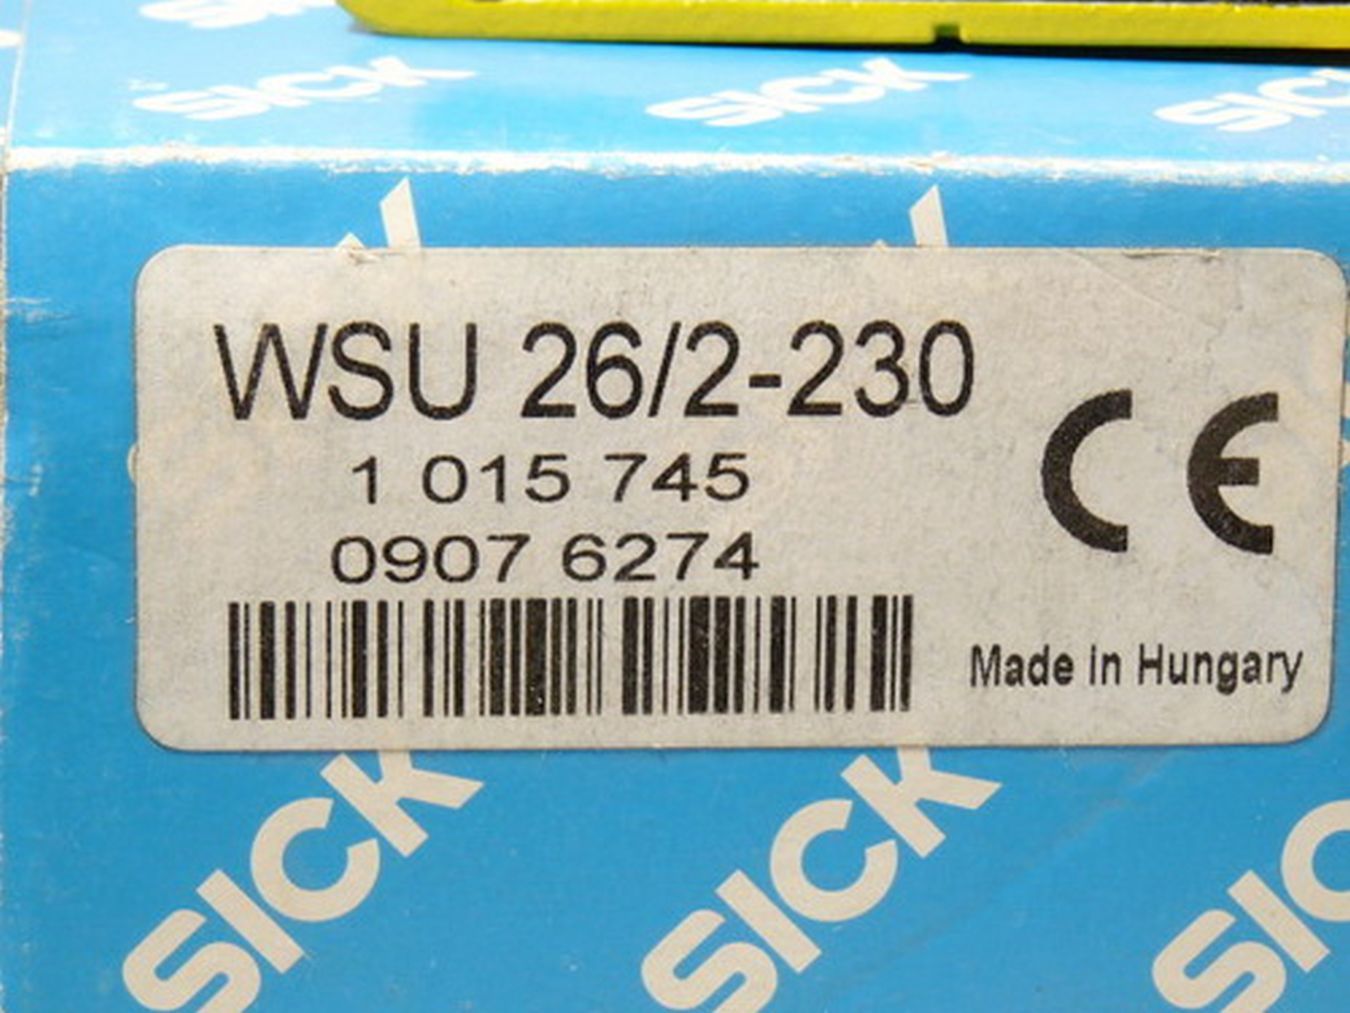 Sick WSU 26/2-230 Sicherheits Lichtschranke Art Nr 1015 745  2-230,施克,PLC